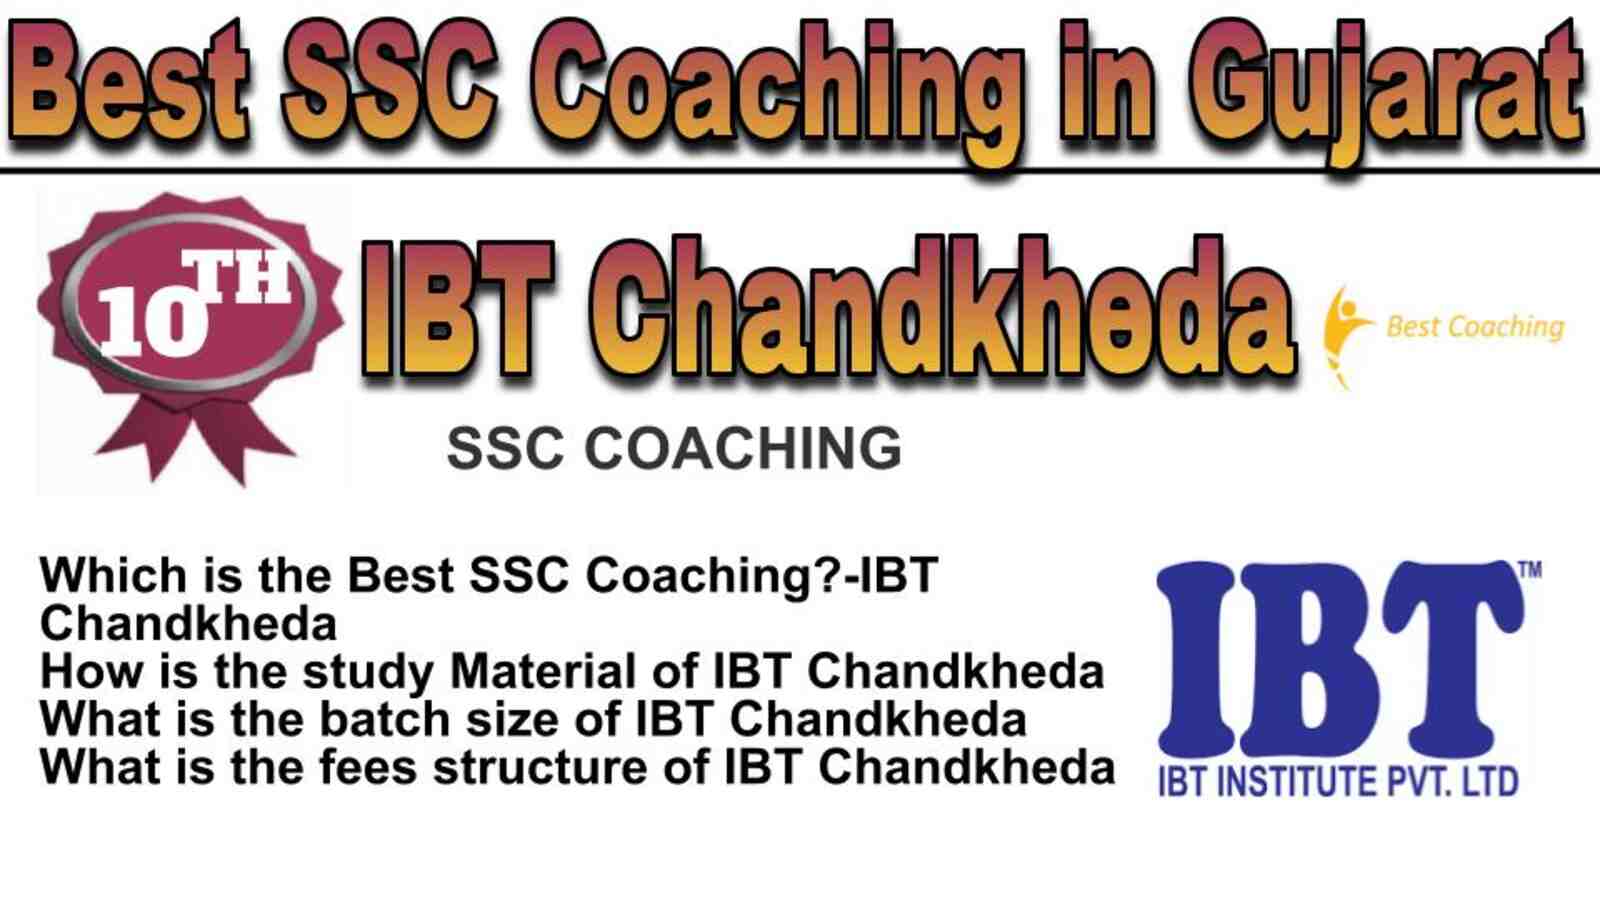 Rank 10 best SSC coaching in Gujarat